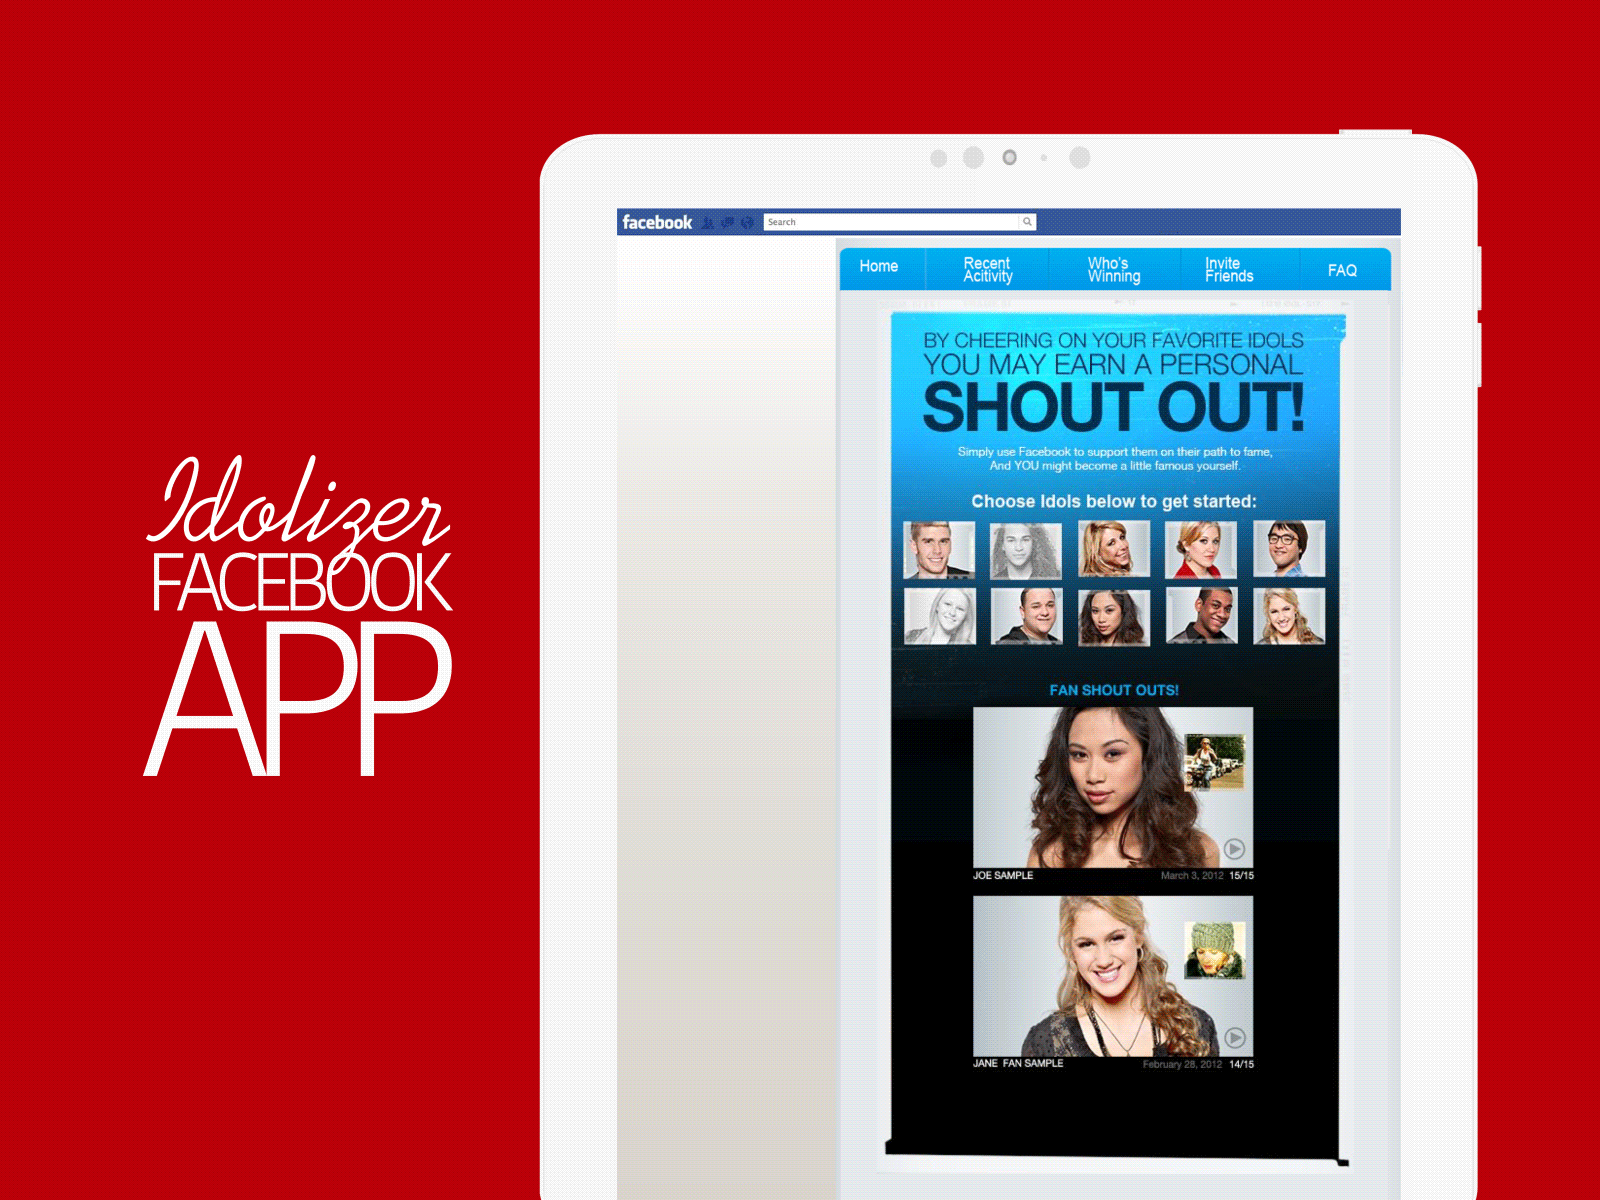 American Idol's FaceBook App Increased Engagement 10X